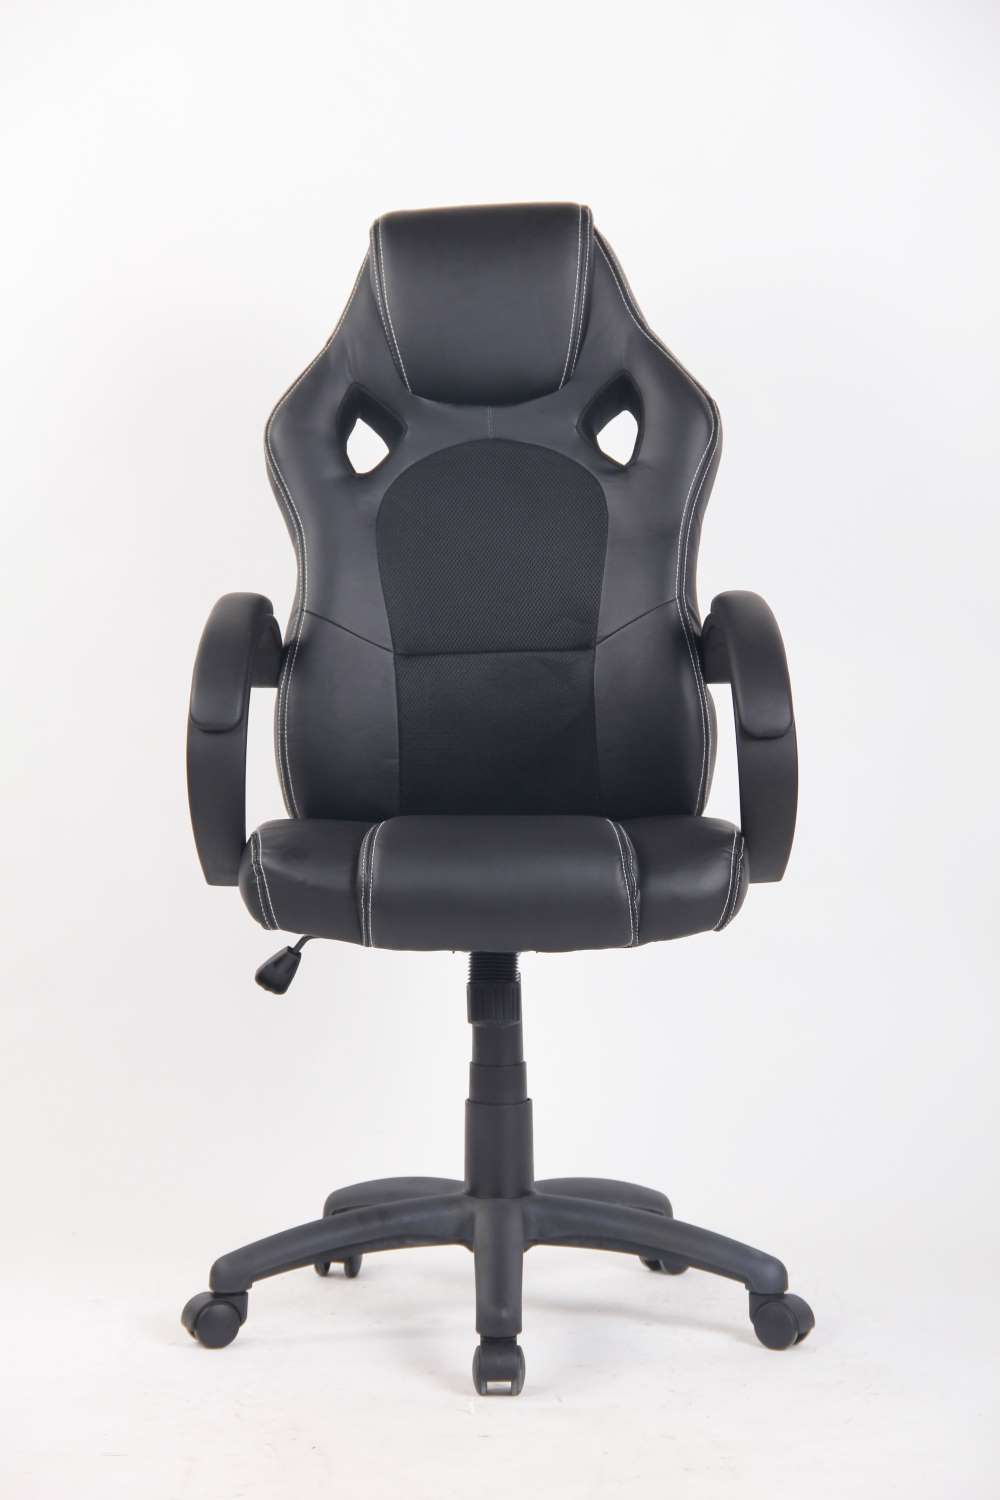 Chapman Gaming Chair - Black